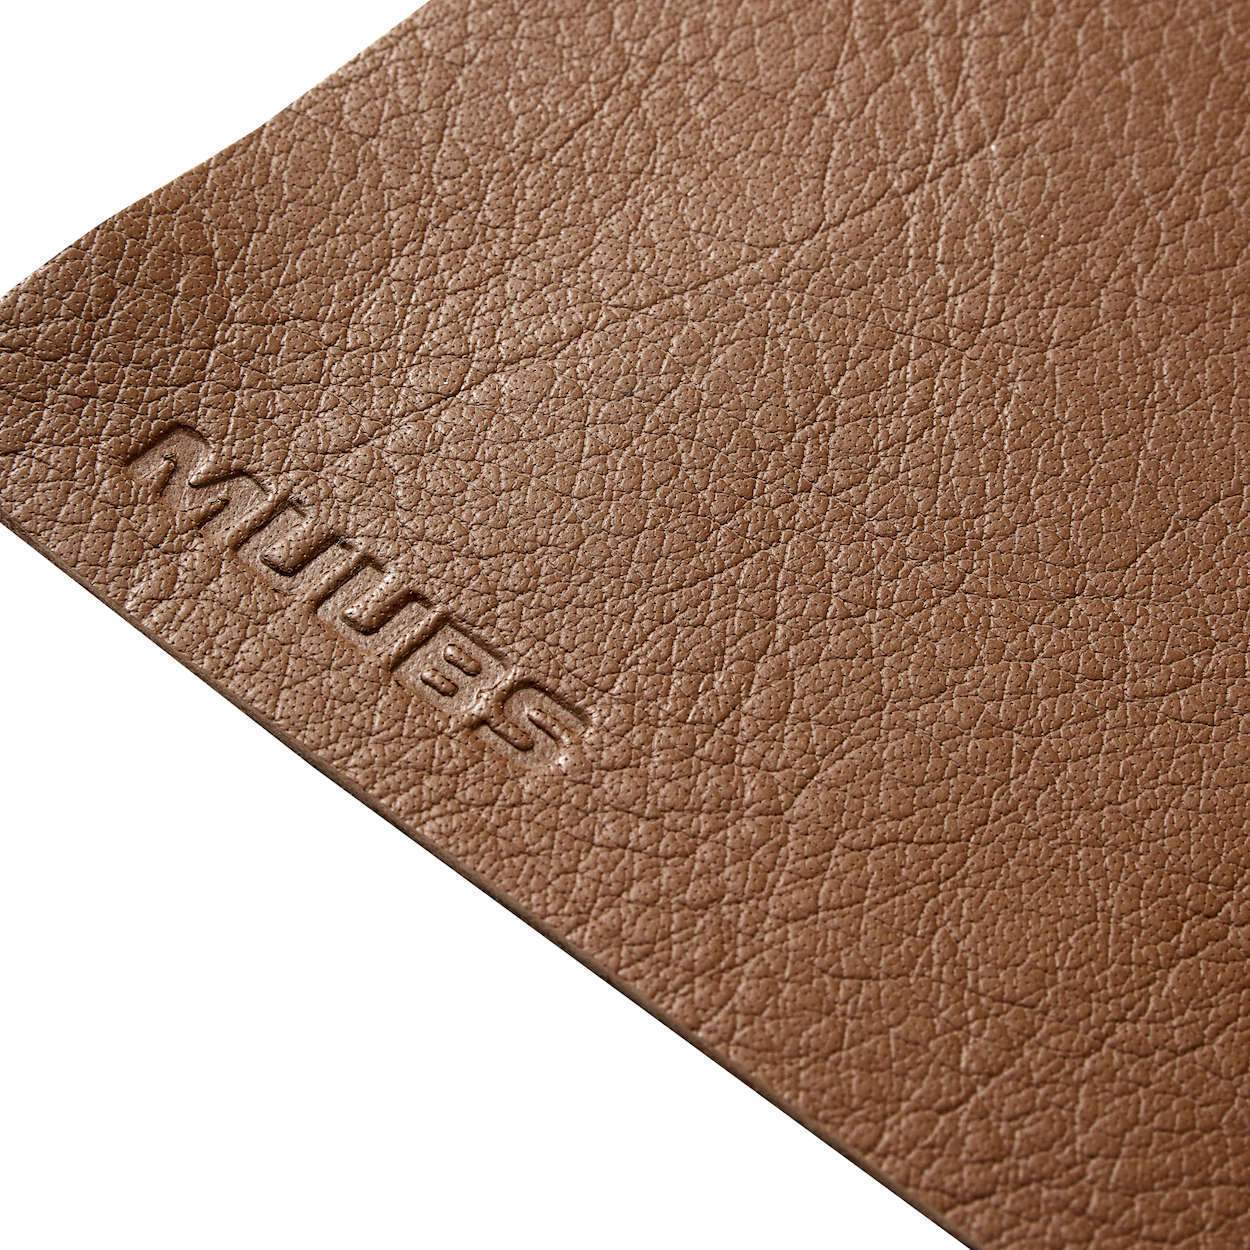 MUUBS Camou täcker brunt brunt läder, 45 cm